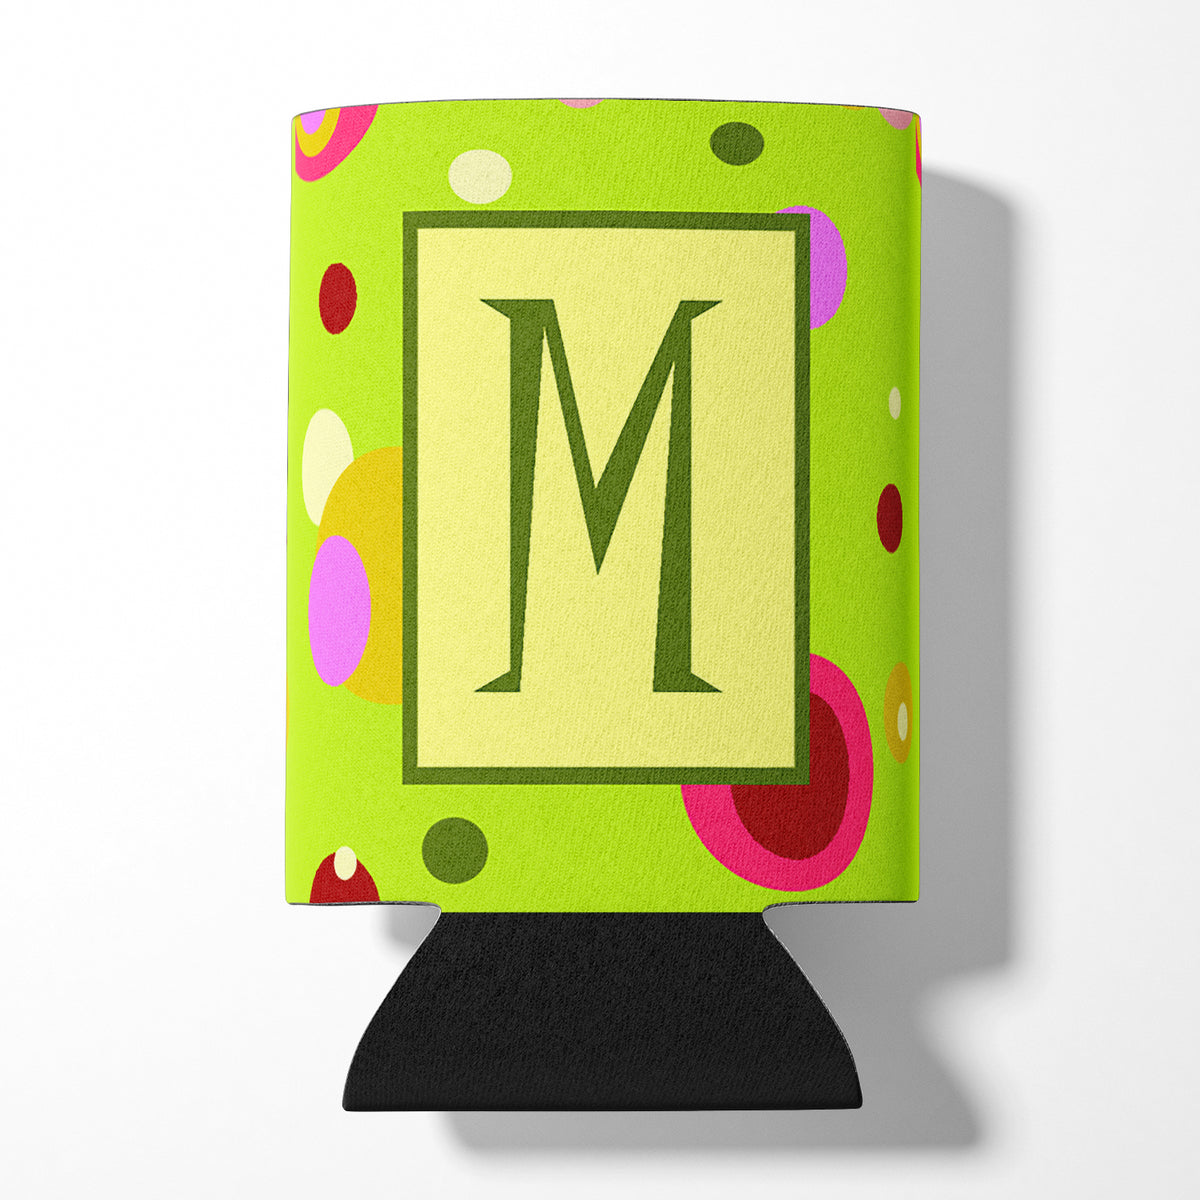 Letter M Initial Monogram - Green Can or Bottle Beverage Insulator Hugger.